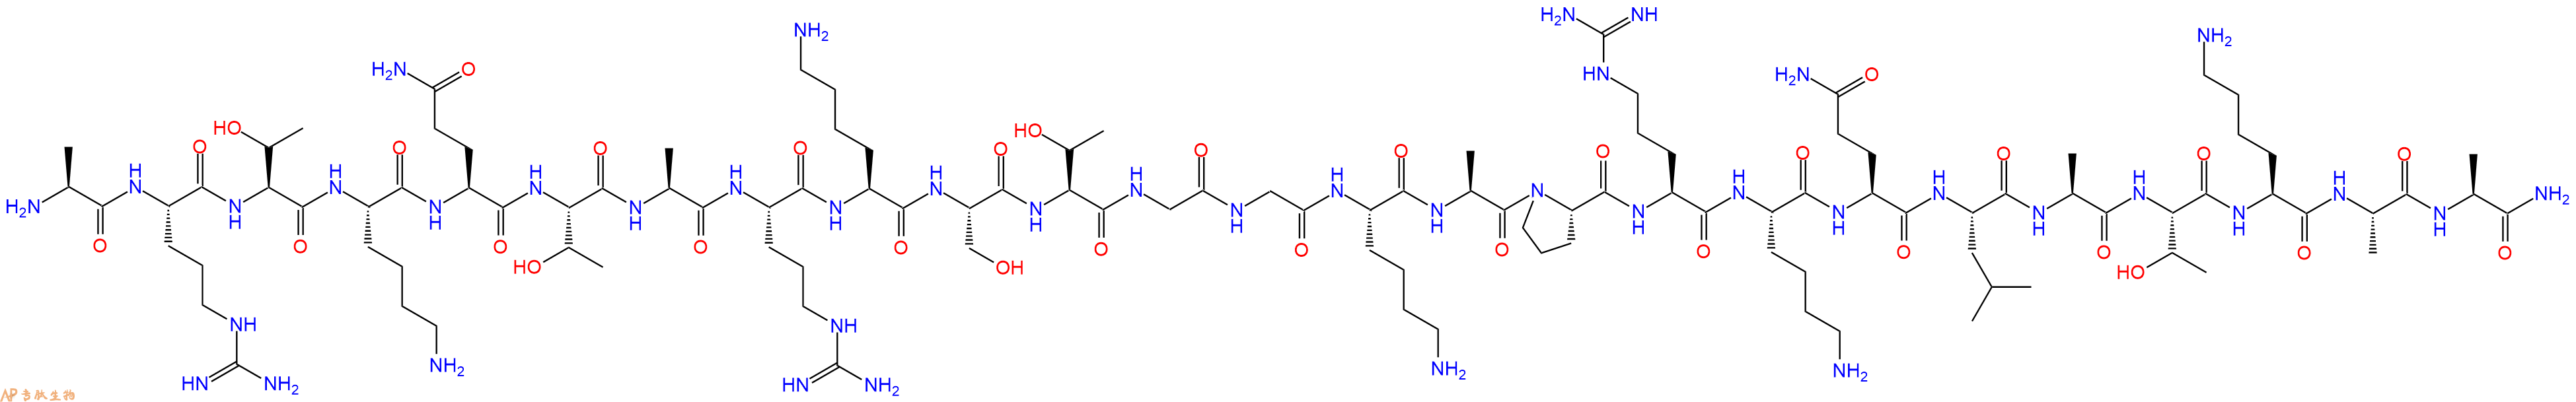 专肽生物产品组蛋白肽段Histone H3 (1-25), amide1373320-65-0